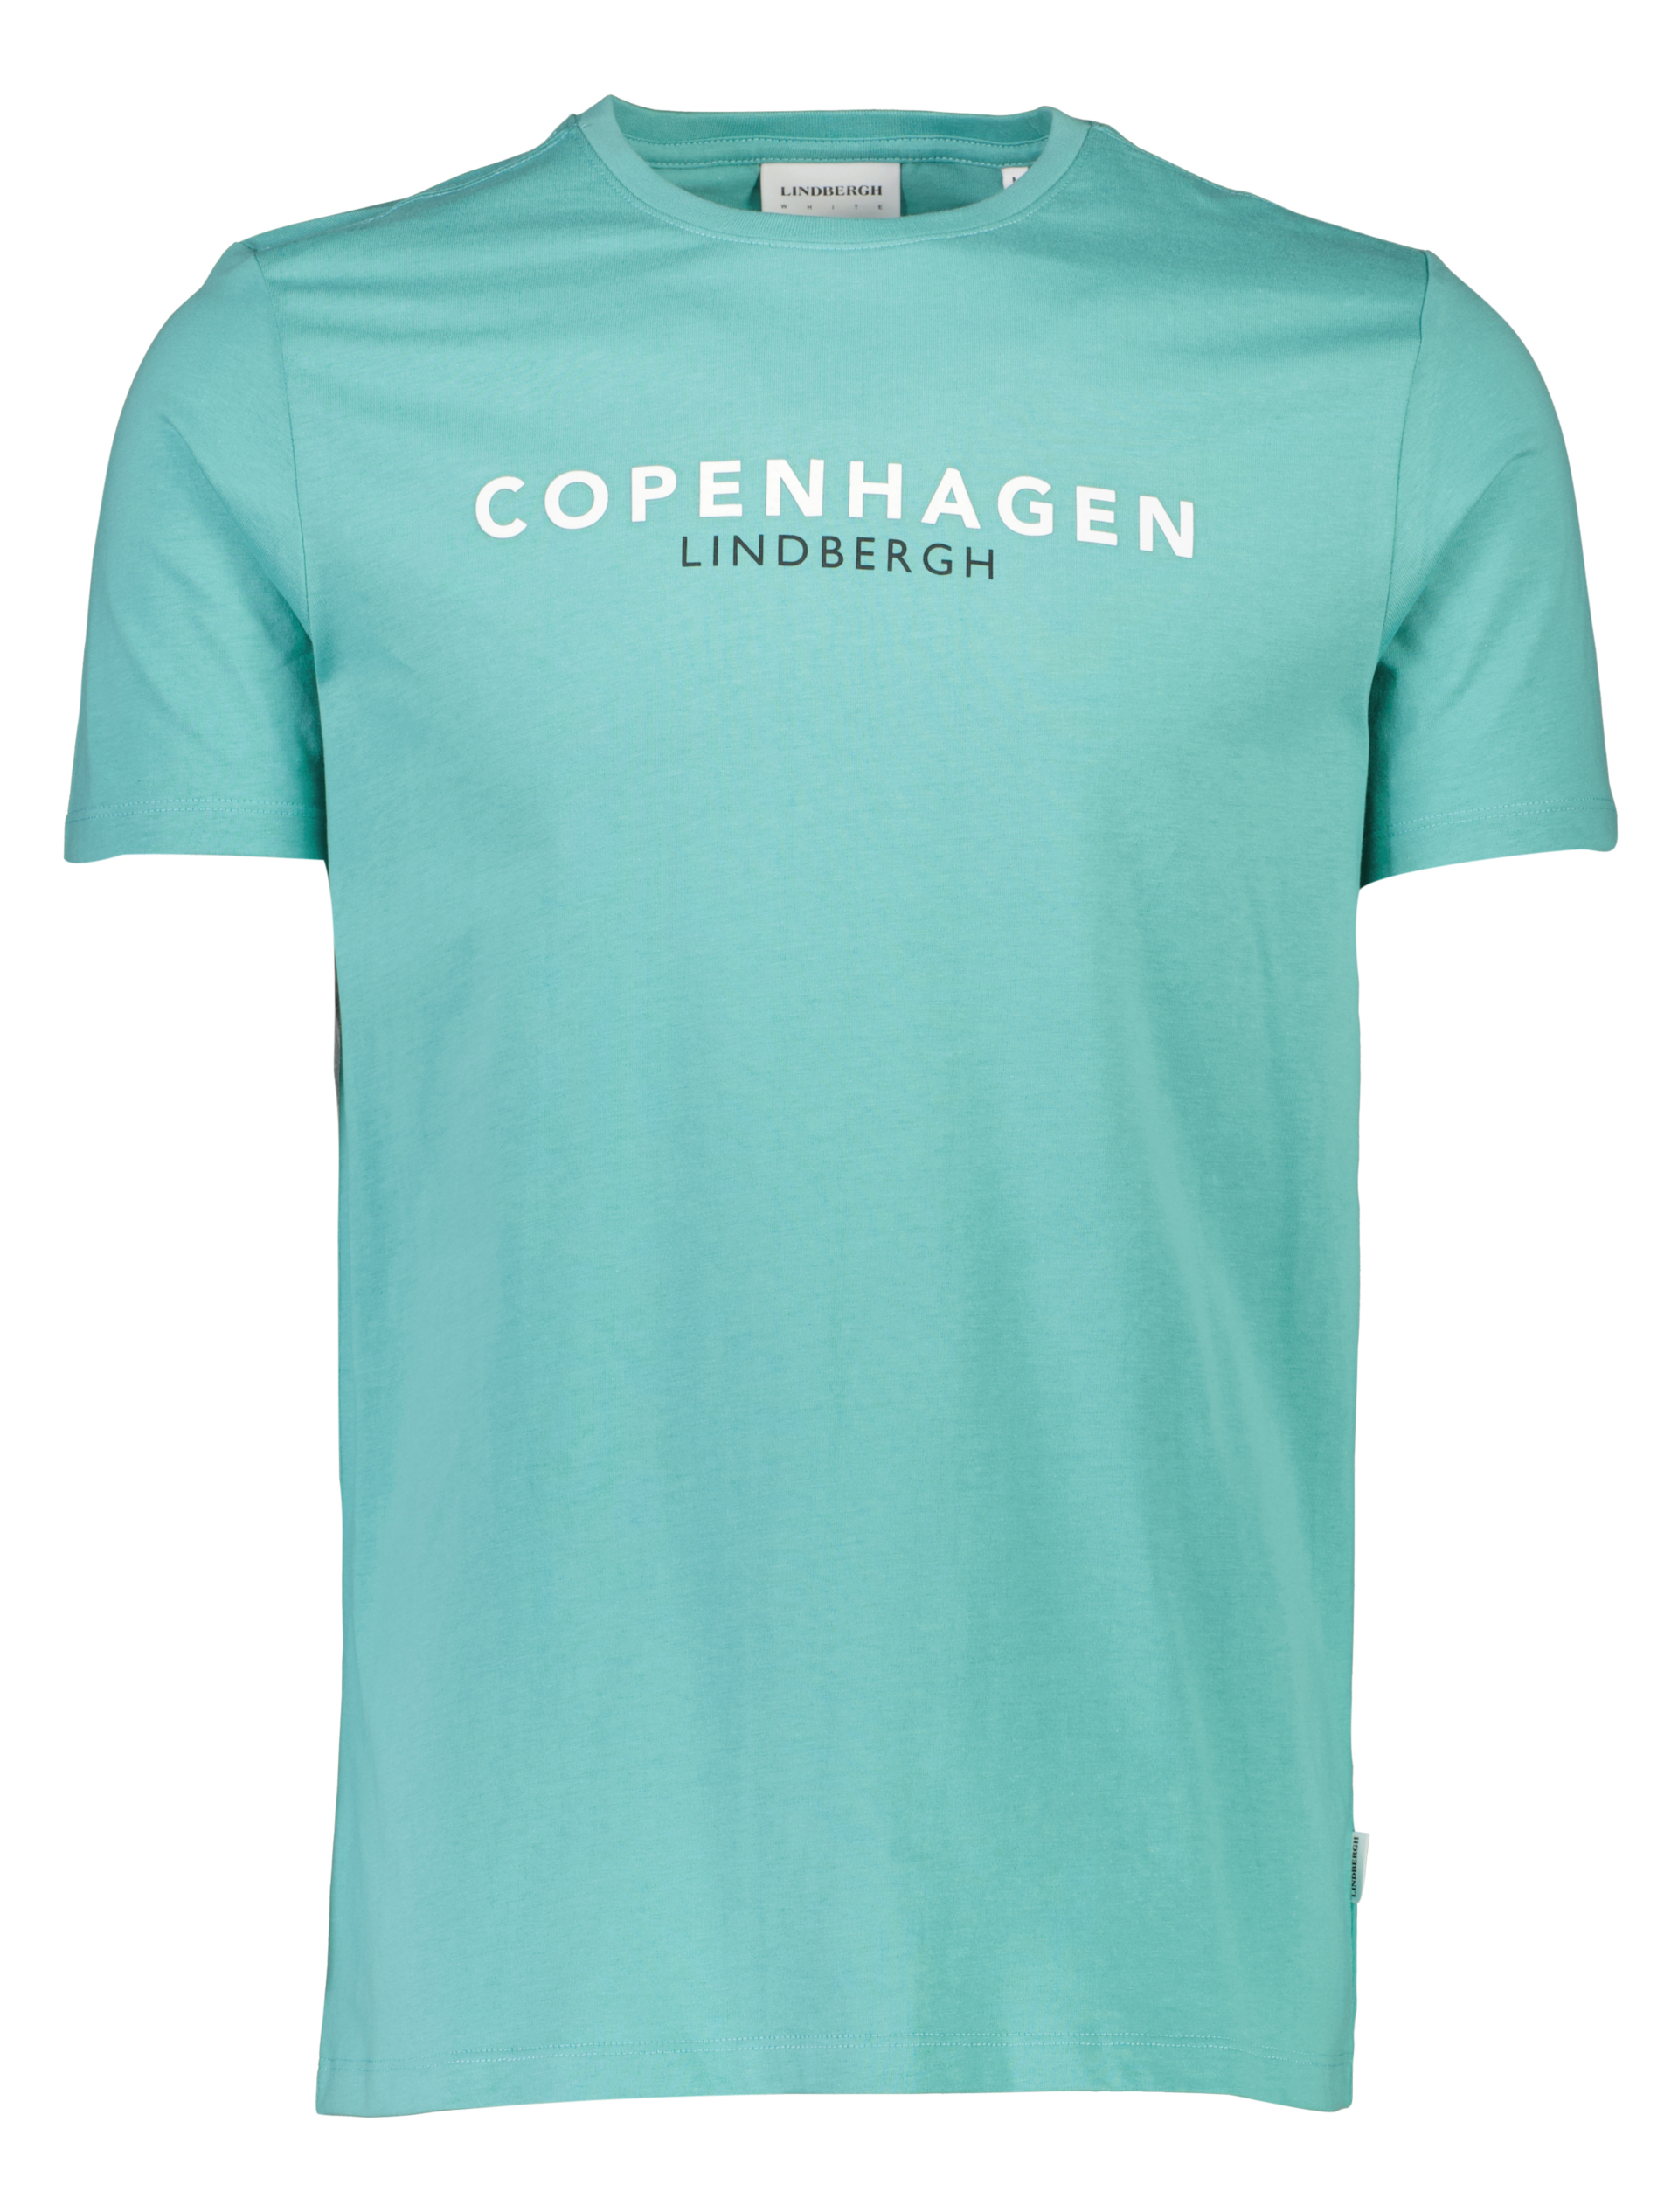 Lindbergh T-shirt grøn / lt green 223